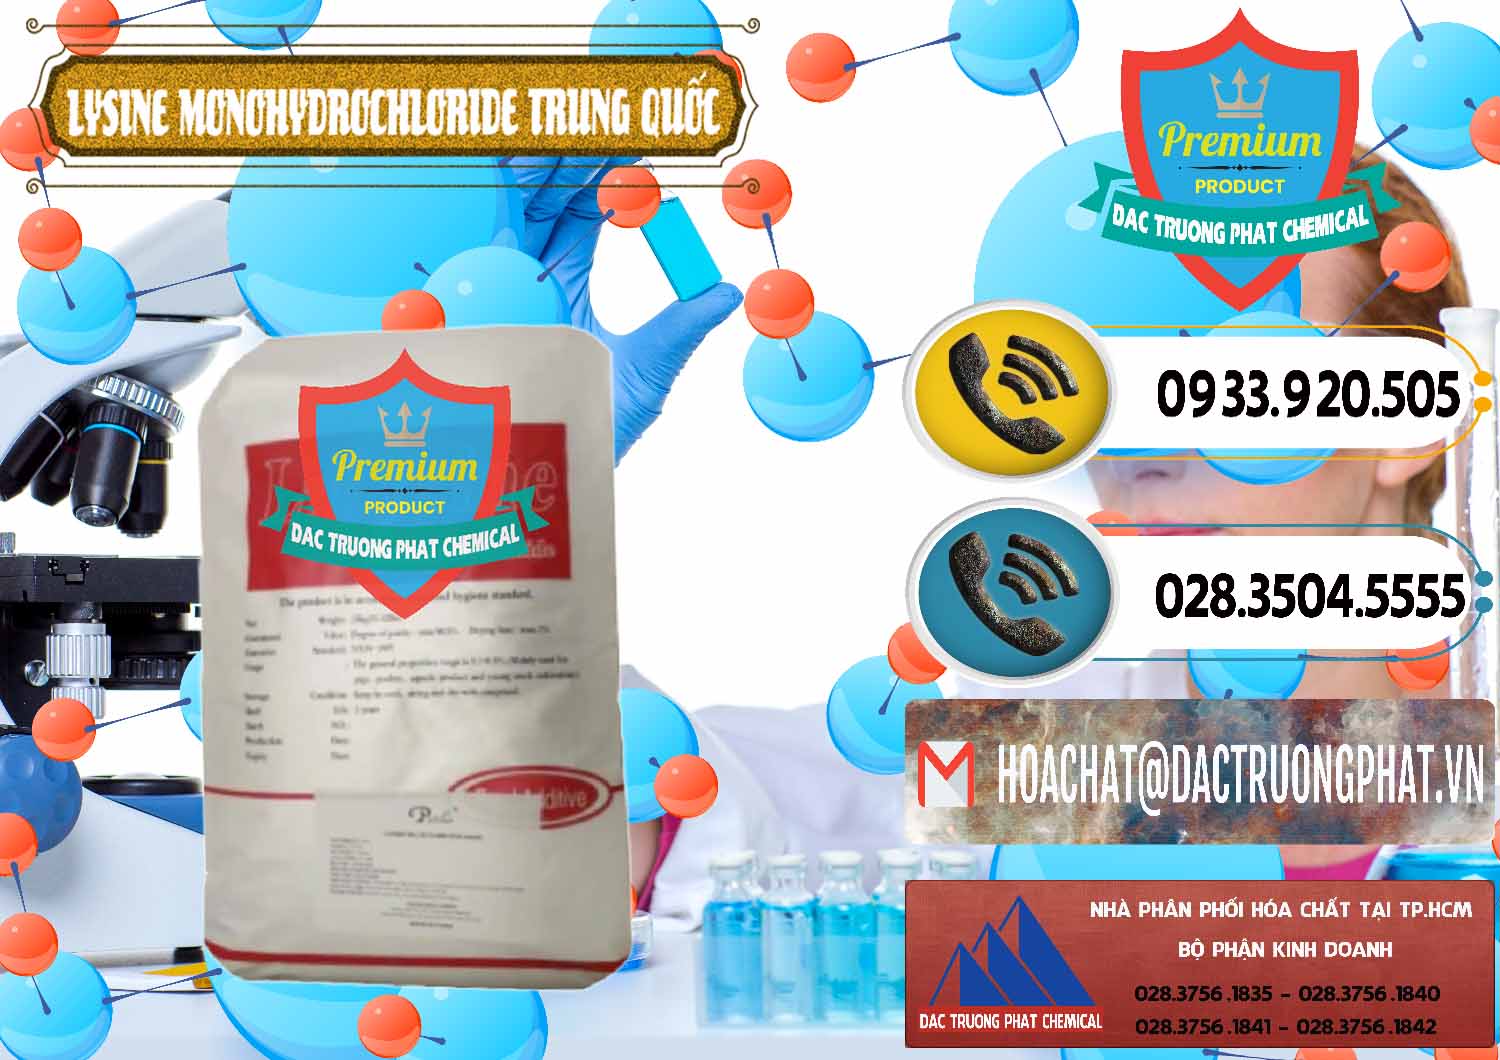 Nơi nhập khẩu và bán L-Lysine Monohydrochloride Feed Grade Trung Quốc China - 0454 - Cty chuyên phân phối và bán hóa chất tại TP.HCM - hoachatdetnhuom.vn